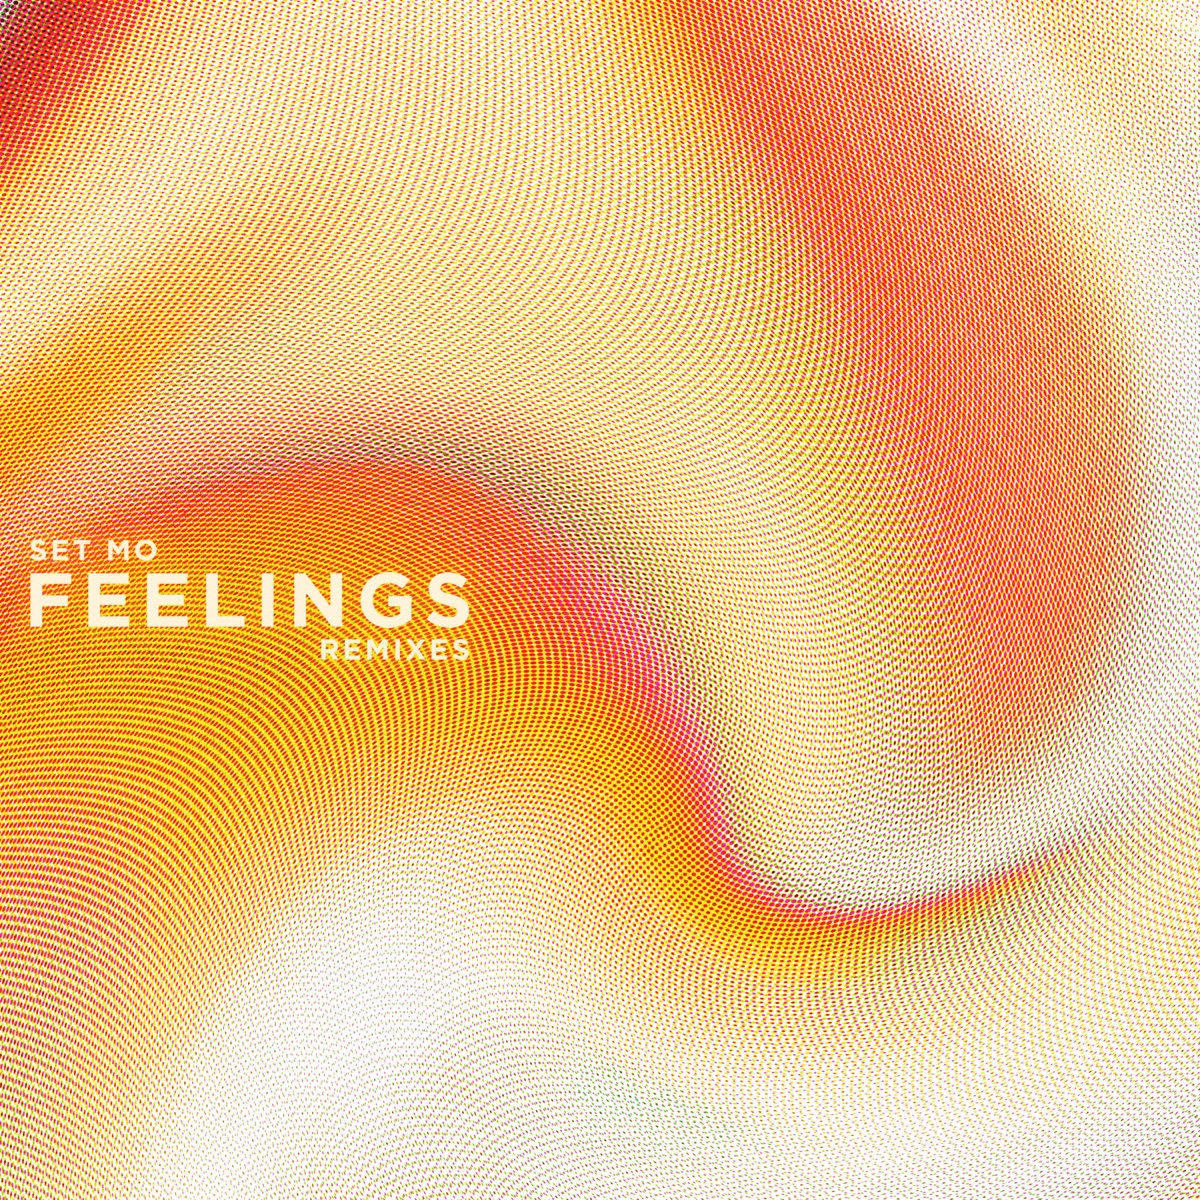 Set Mo - Feelings (Remixes) - Single